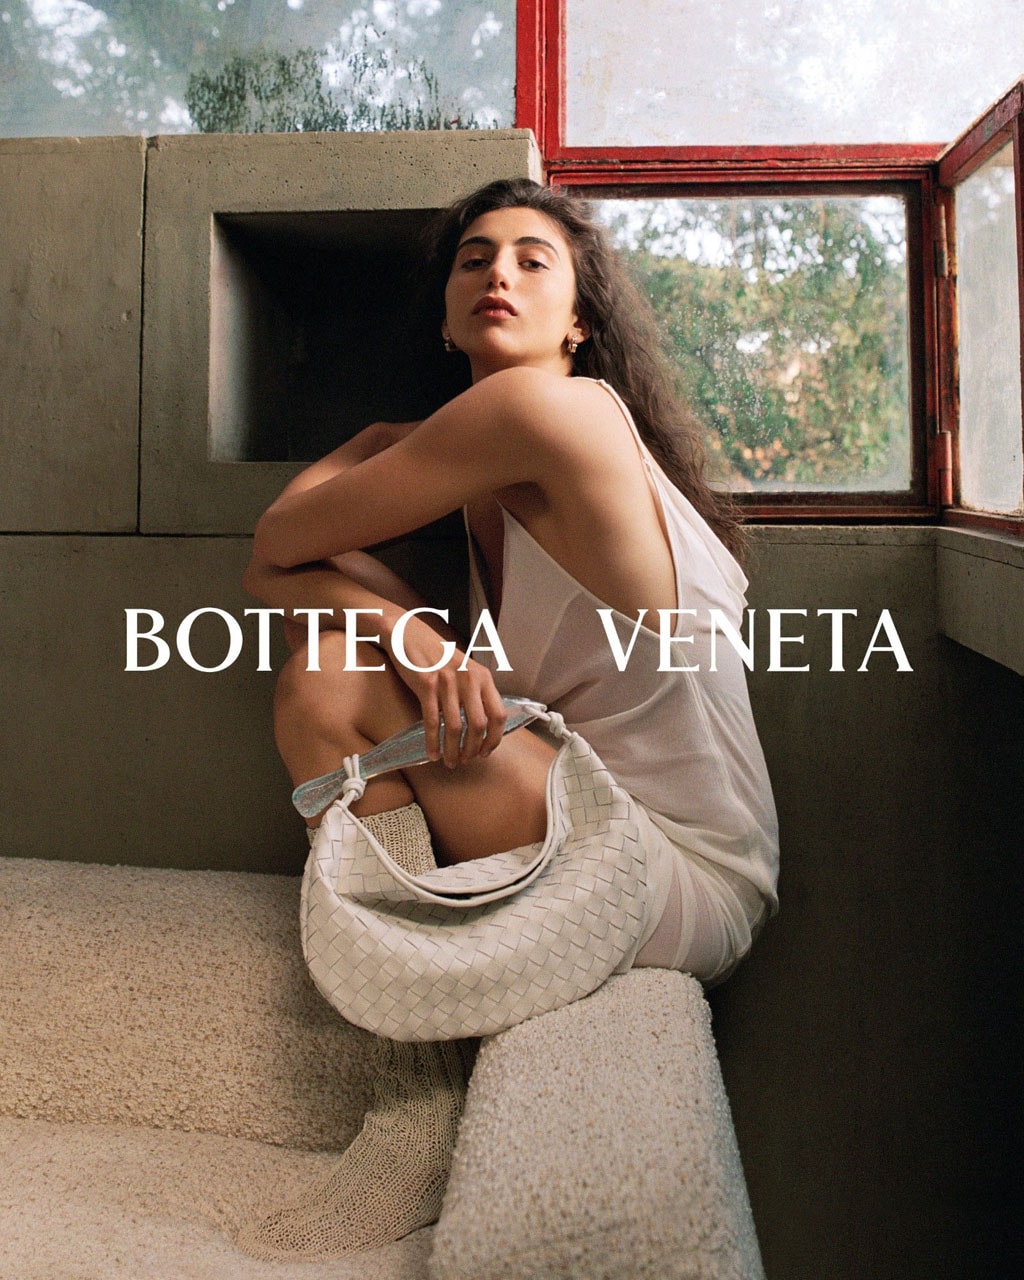 보테가 베네타, 2023 FW 컬렉션 캠페인 화보 공개, bottega veneta, campaign, 화보, 마티유 블레이지